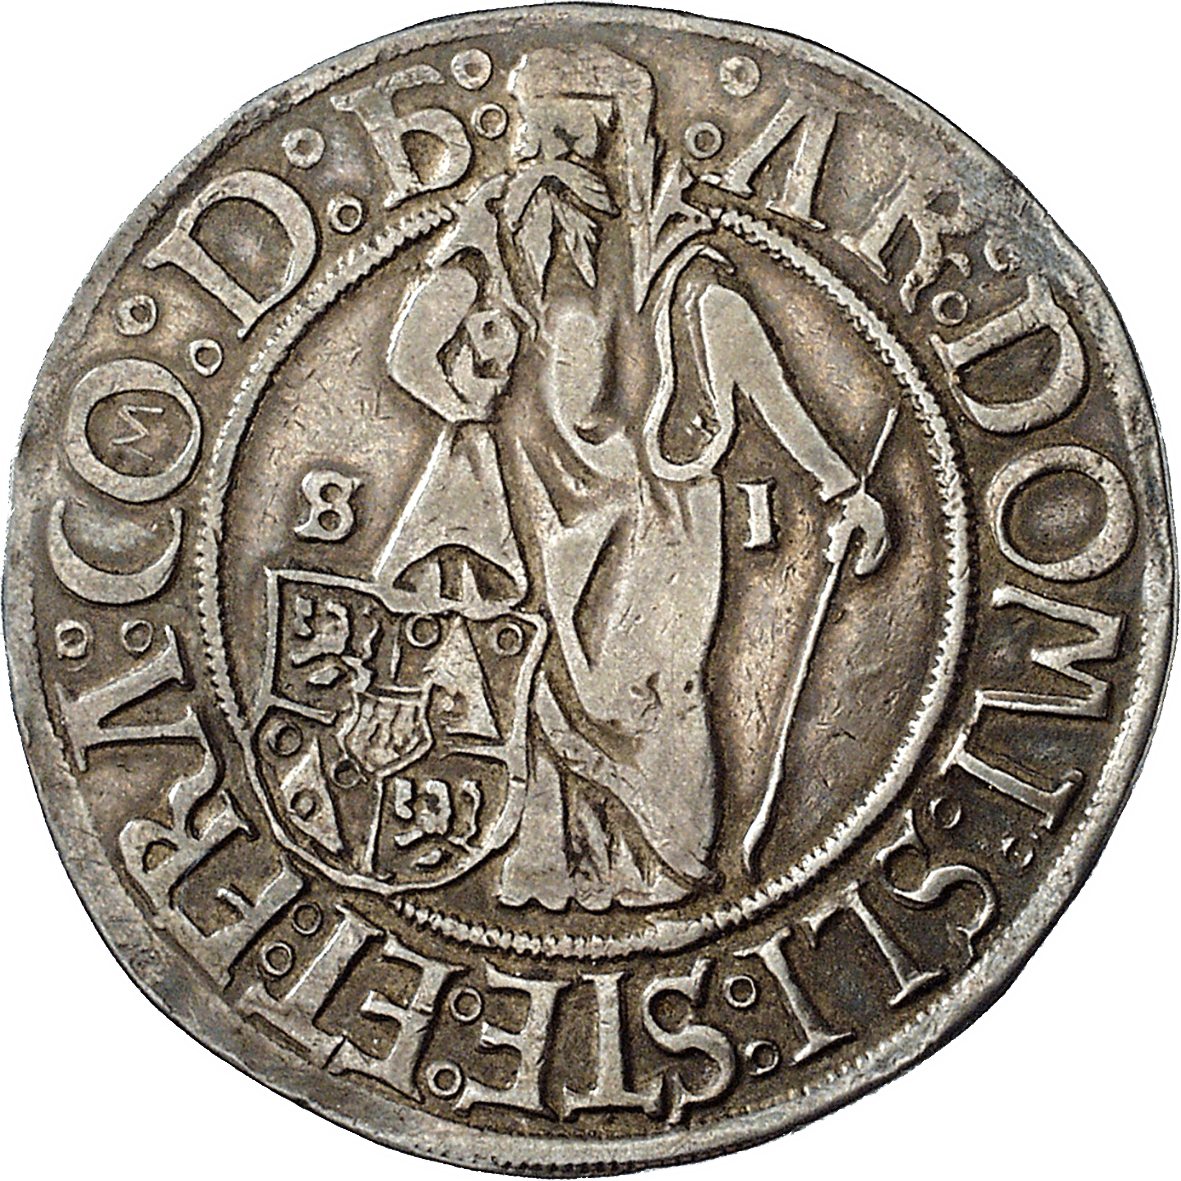 Heiliges Römisches Reich, Königreich Böhmen, Grafschaft Schlick, Stephan, Guldengroschen 1519 (reverse)